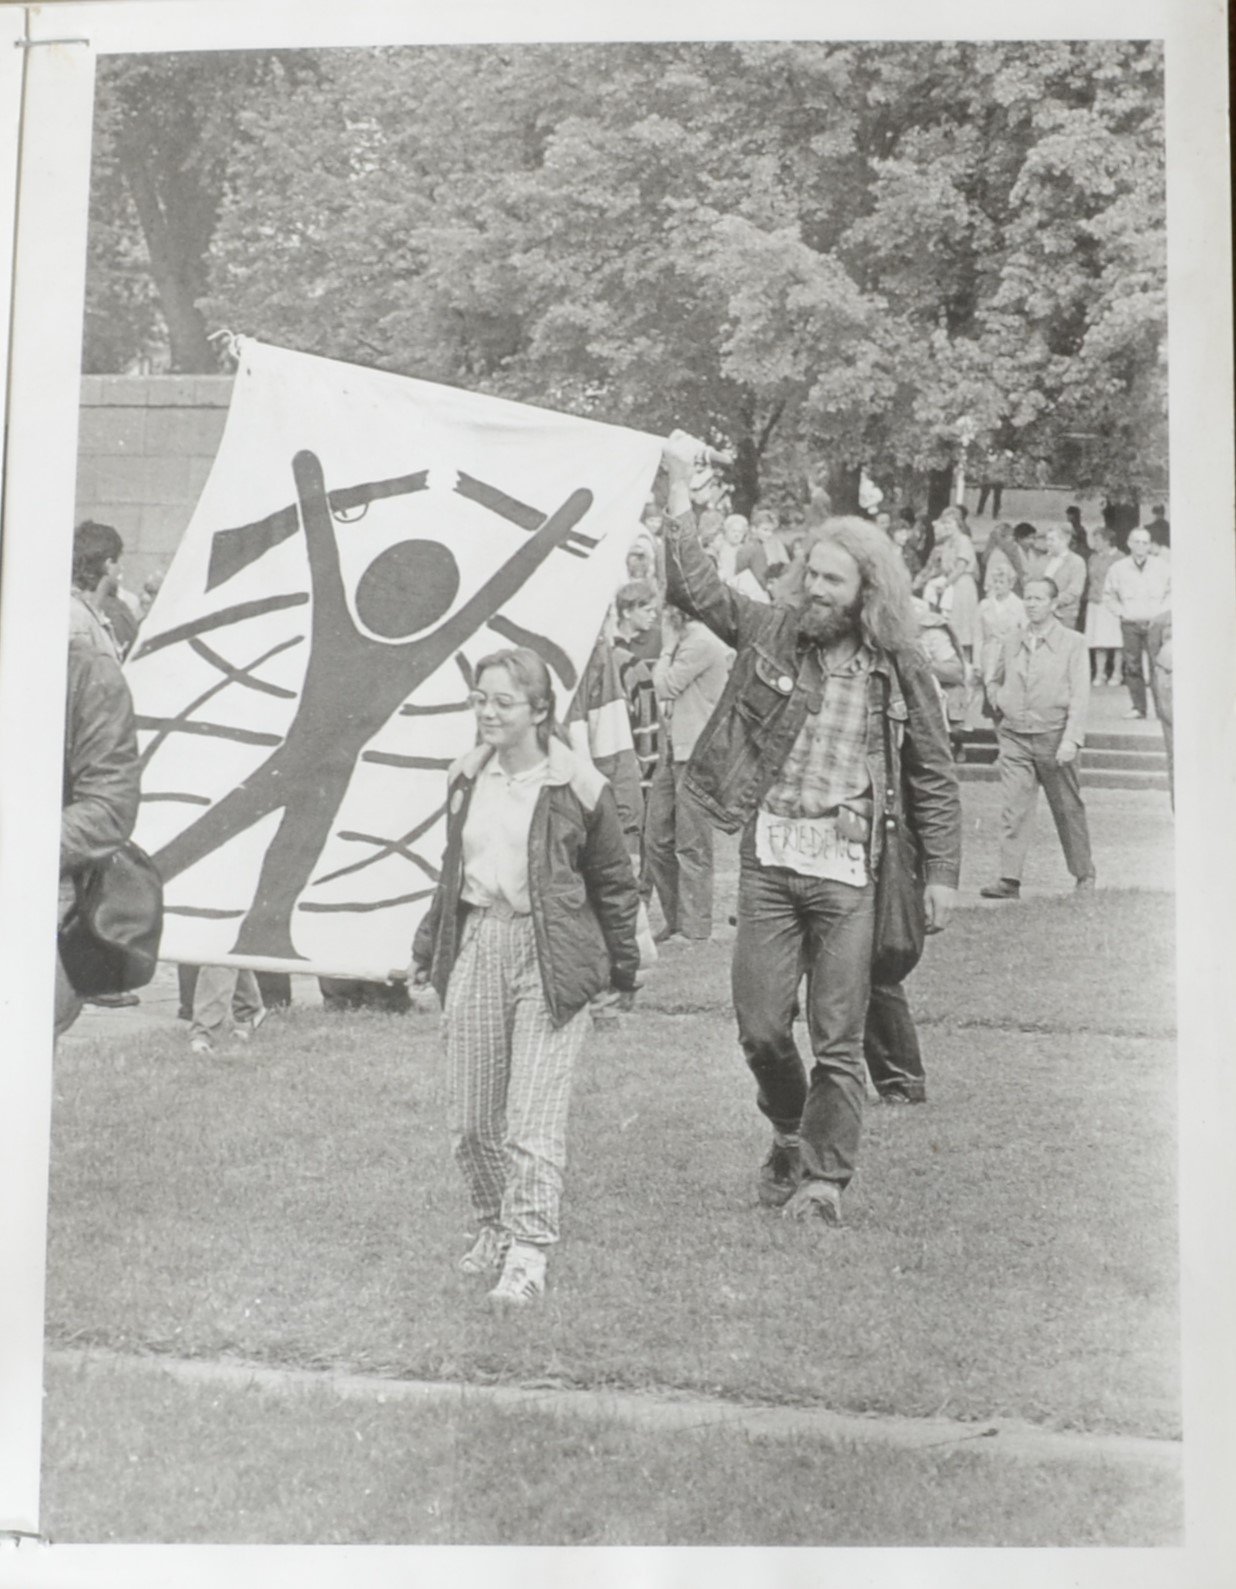 Teilnehmende des "Olof-Palme-Friedensmarsch" mit Transparent "Schwerter zu Pflugscharen" (DDR Geschichtsmuseum im Dokumentationszentrum Perleberg CC BY-SA)